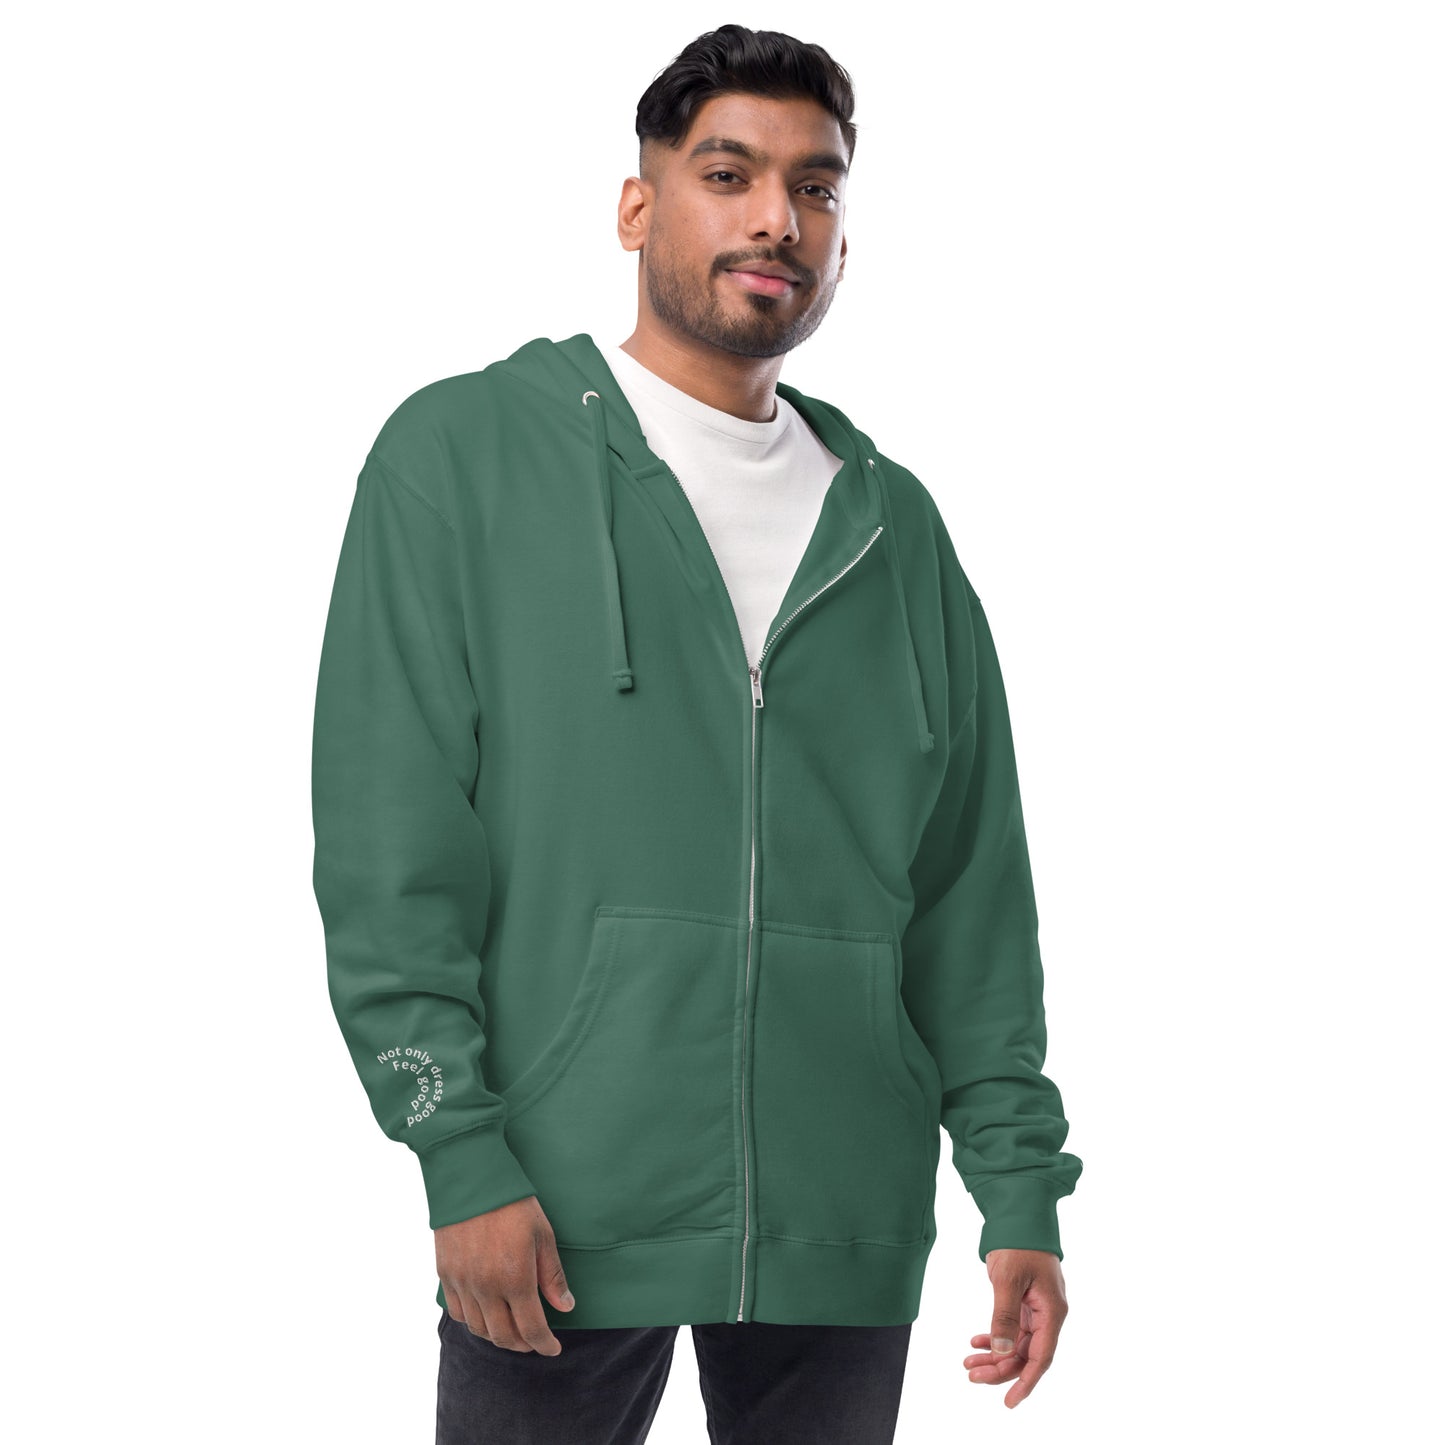 Andreco B. fleece zip up hoodie